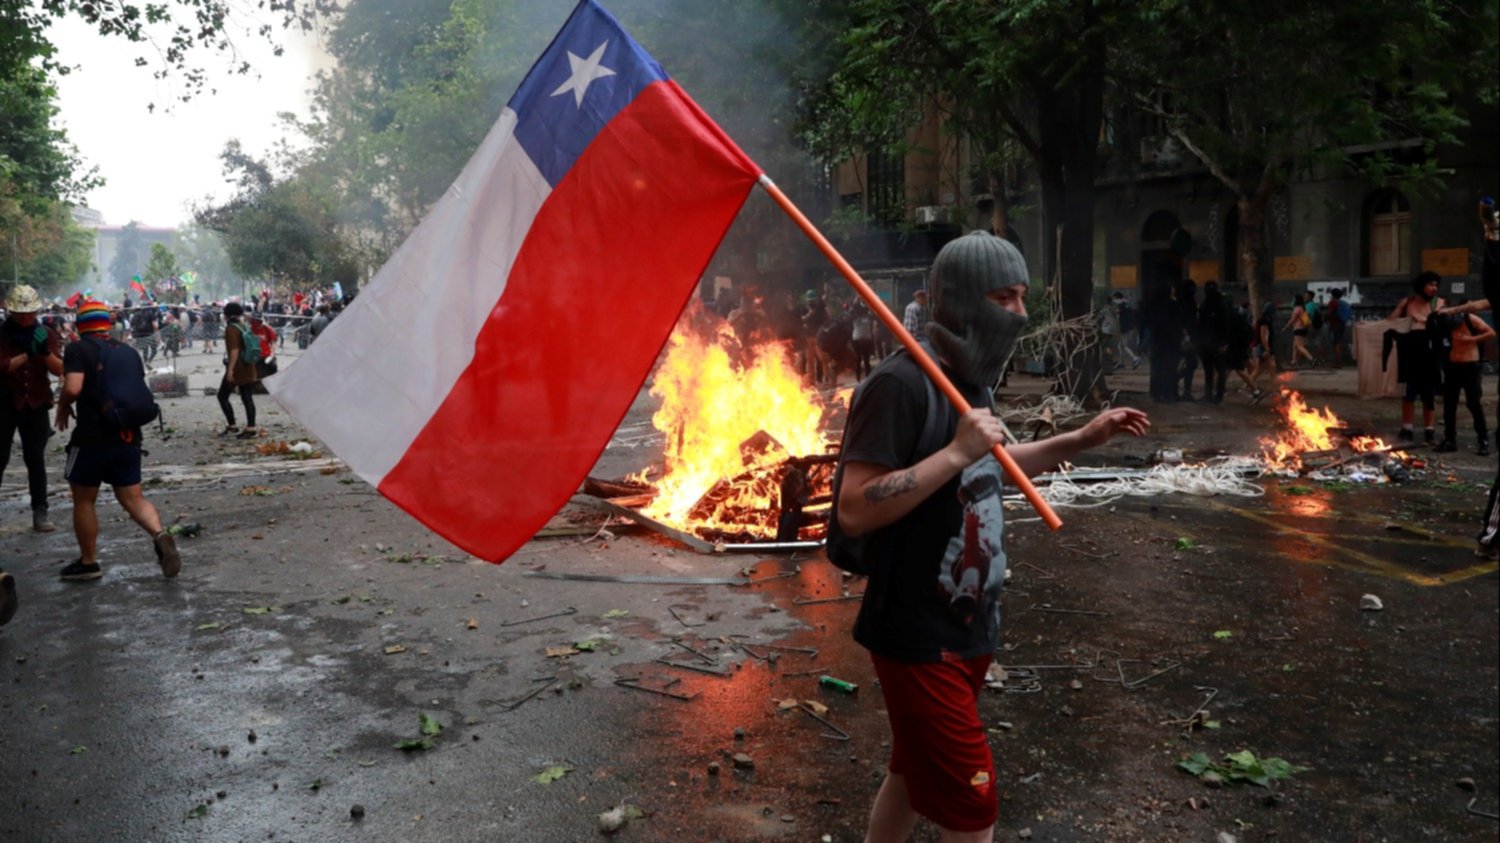 Los bahienses pararon la pelota para poder analizar el conflicto social en Chile